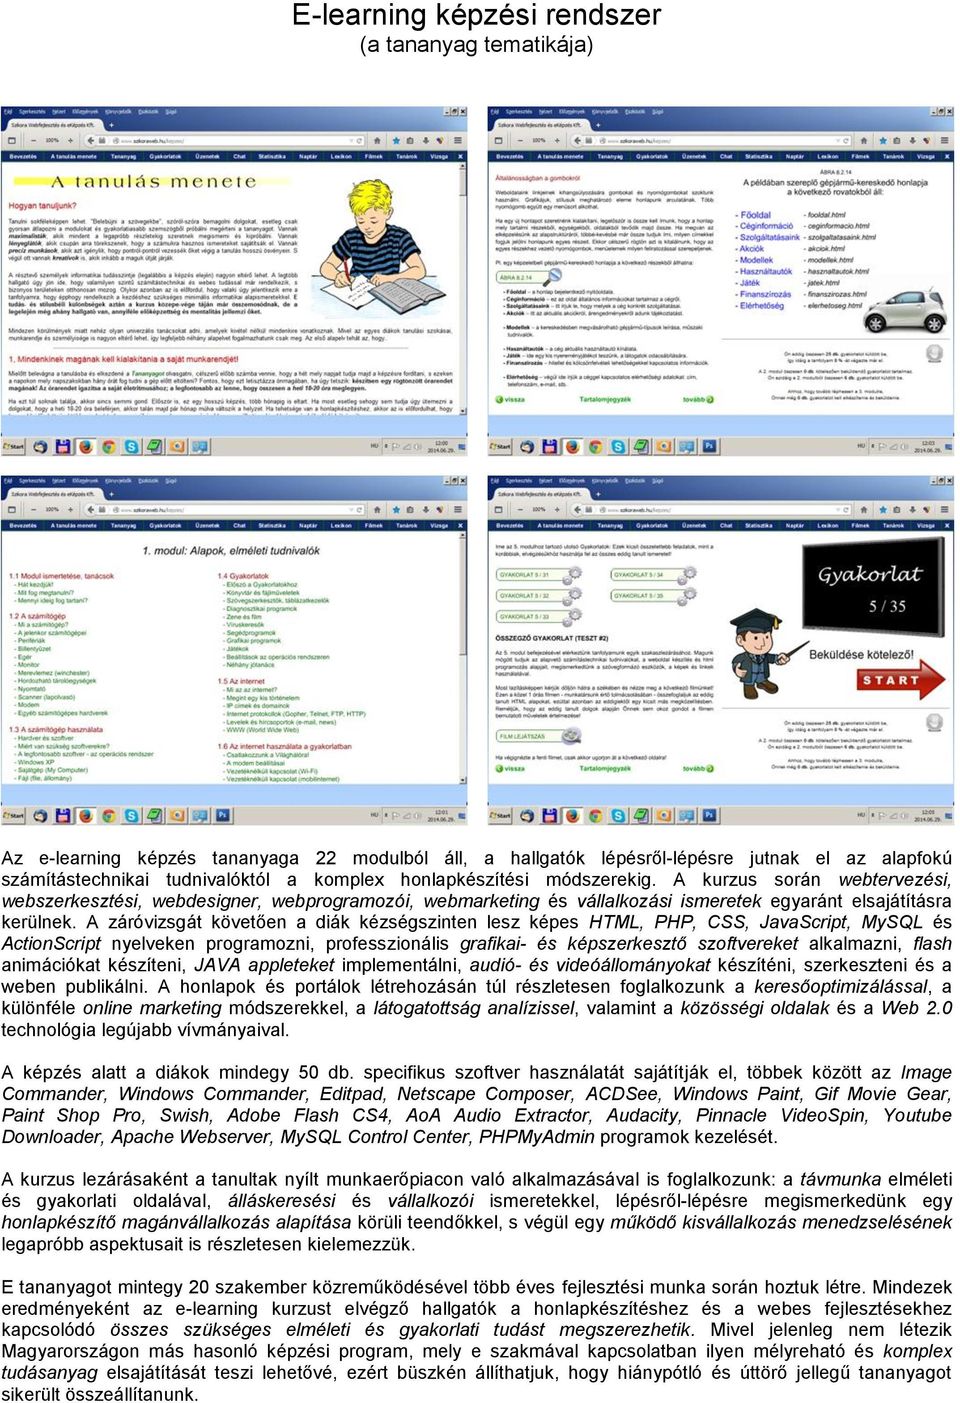 E-learning képzési rendszer (a tananyag tematikája) - PDF Free Download